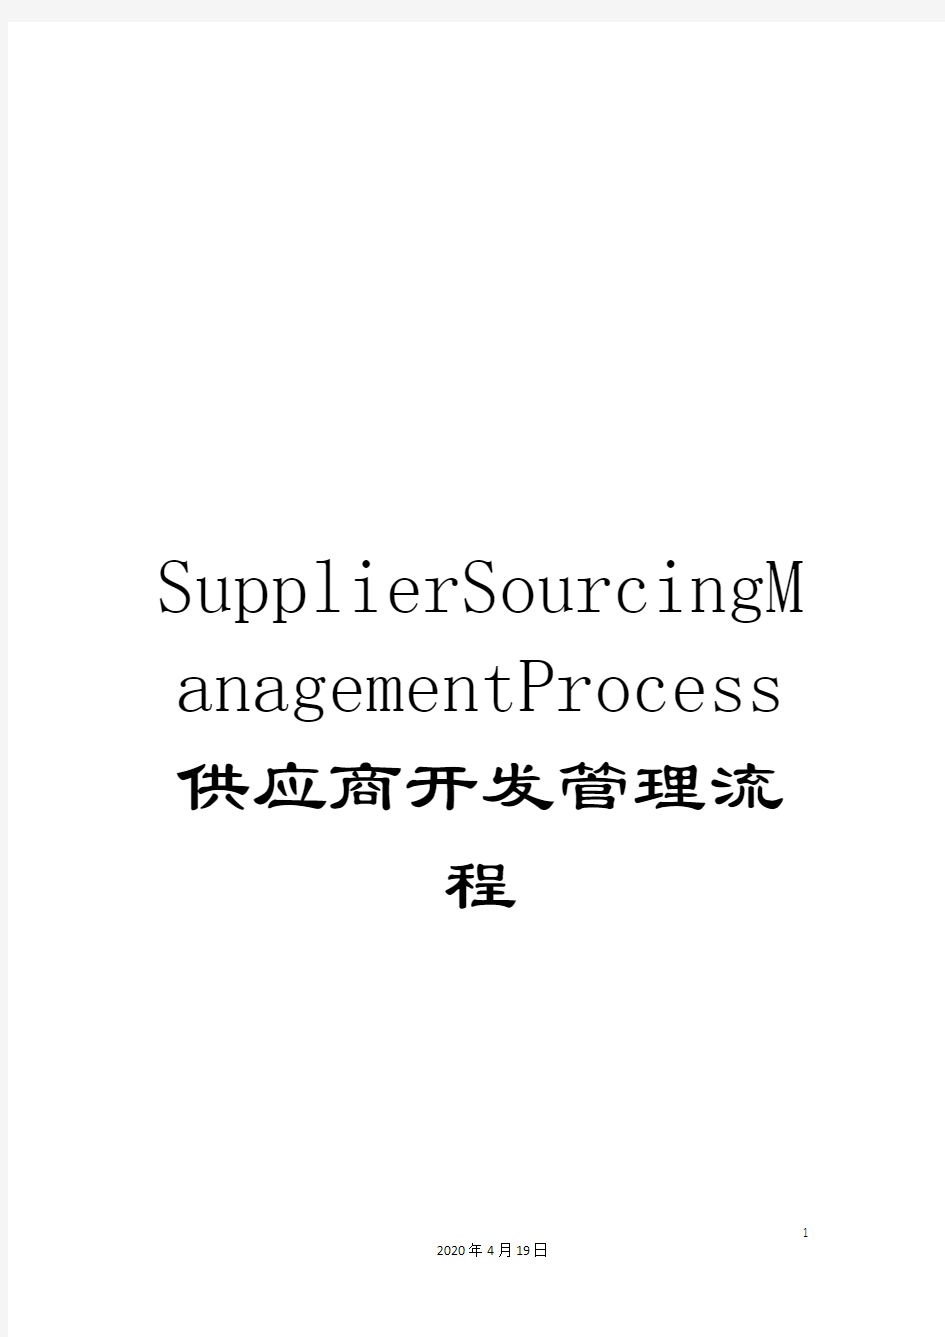 SupplierSourcingManagementProcess供应商开发管理流程